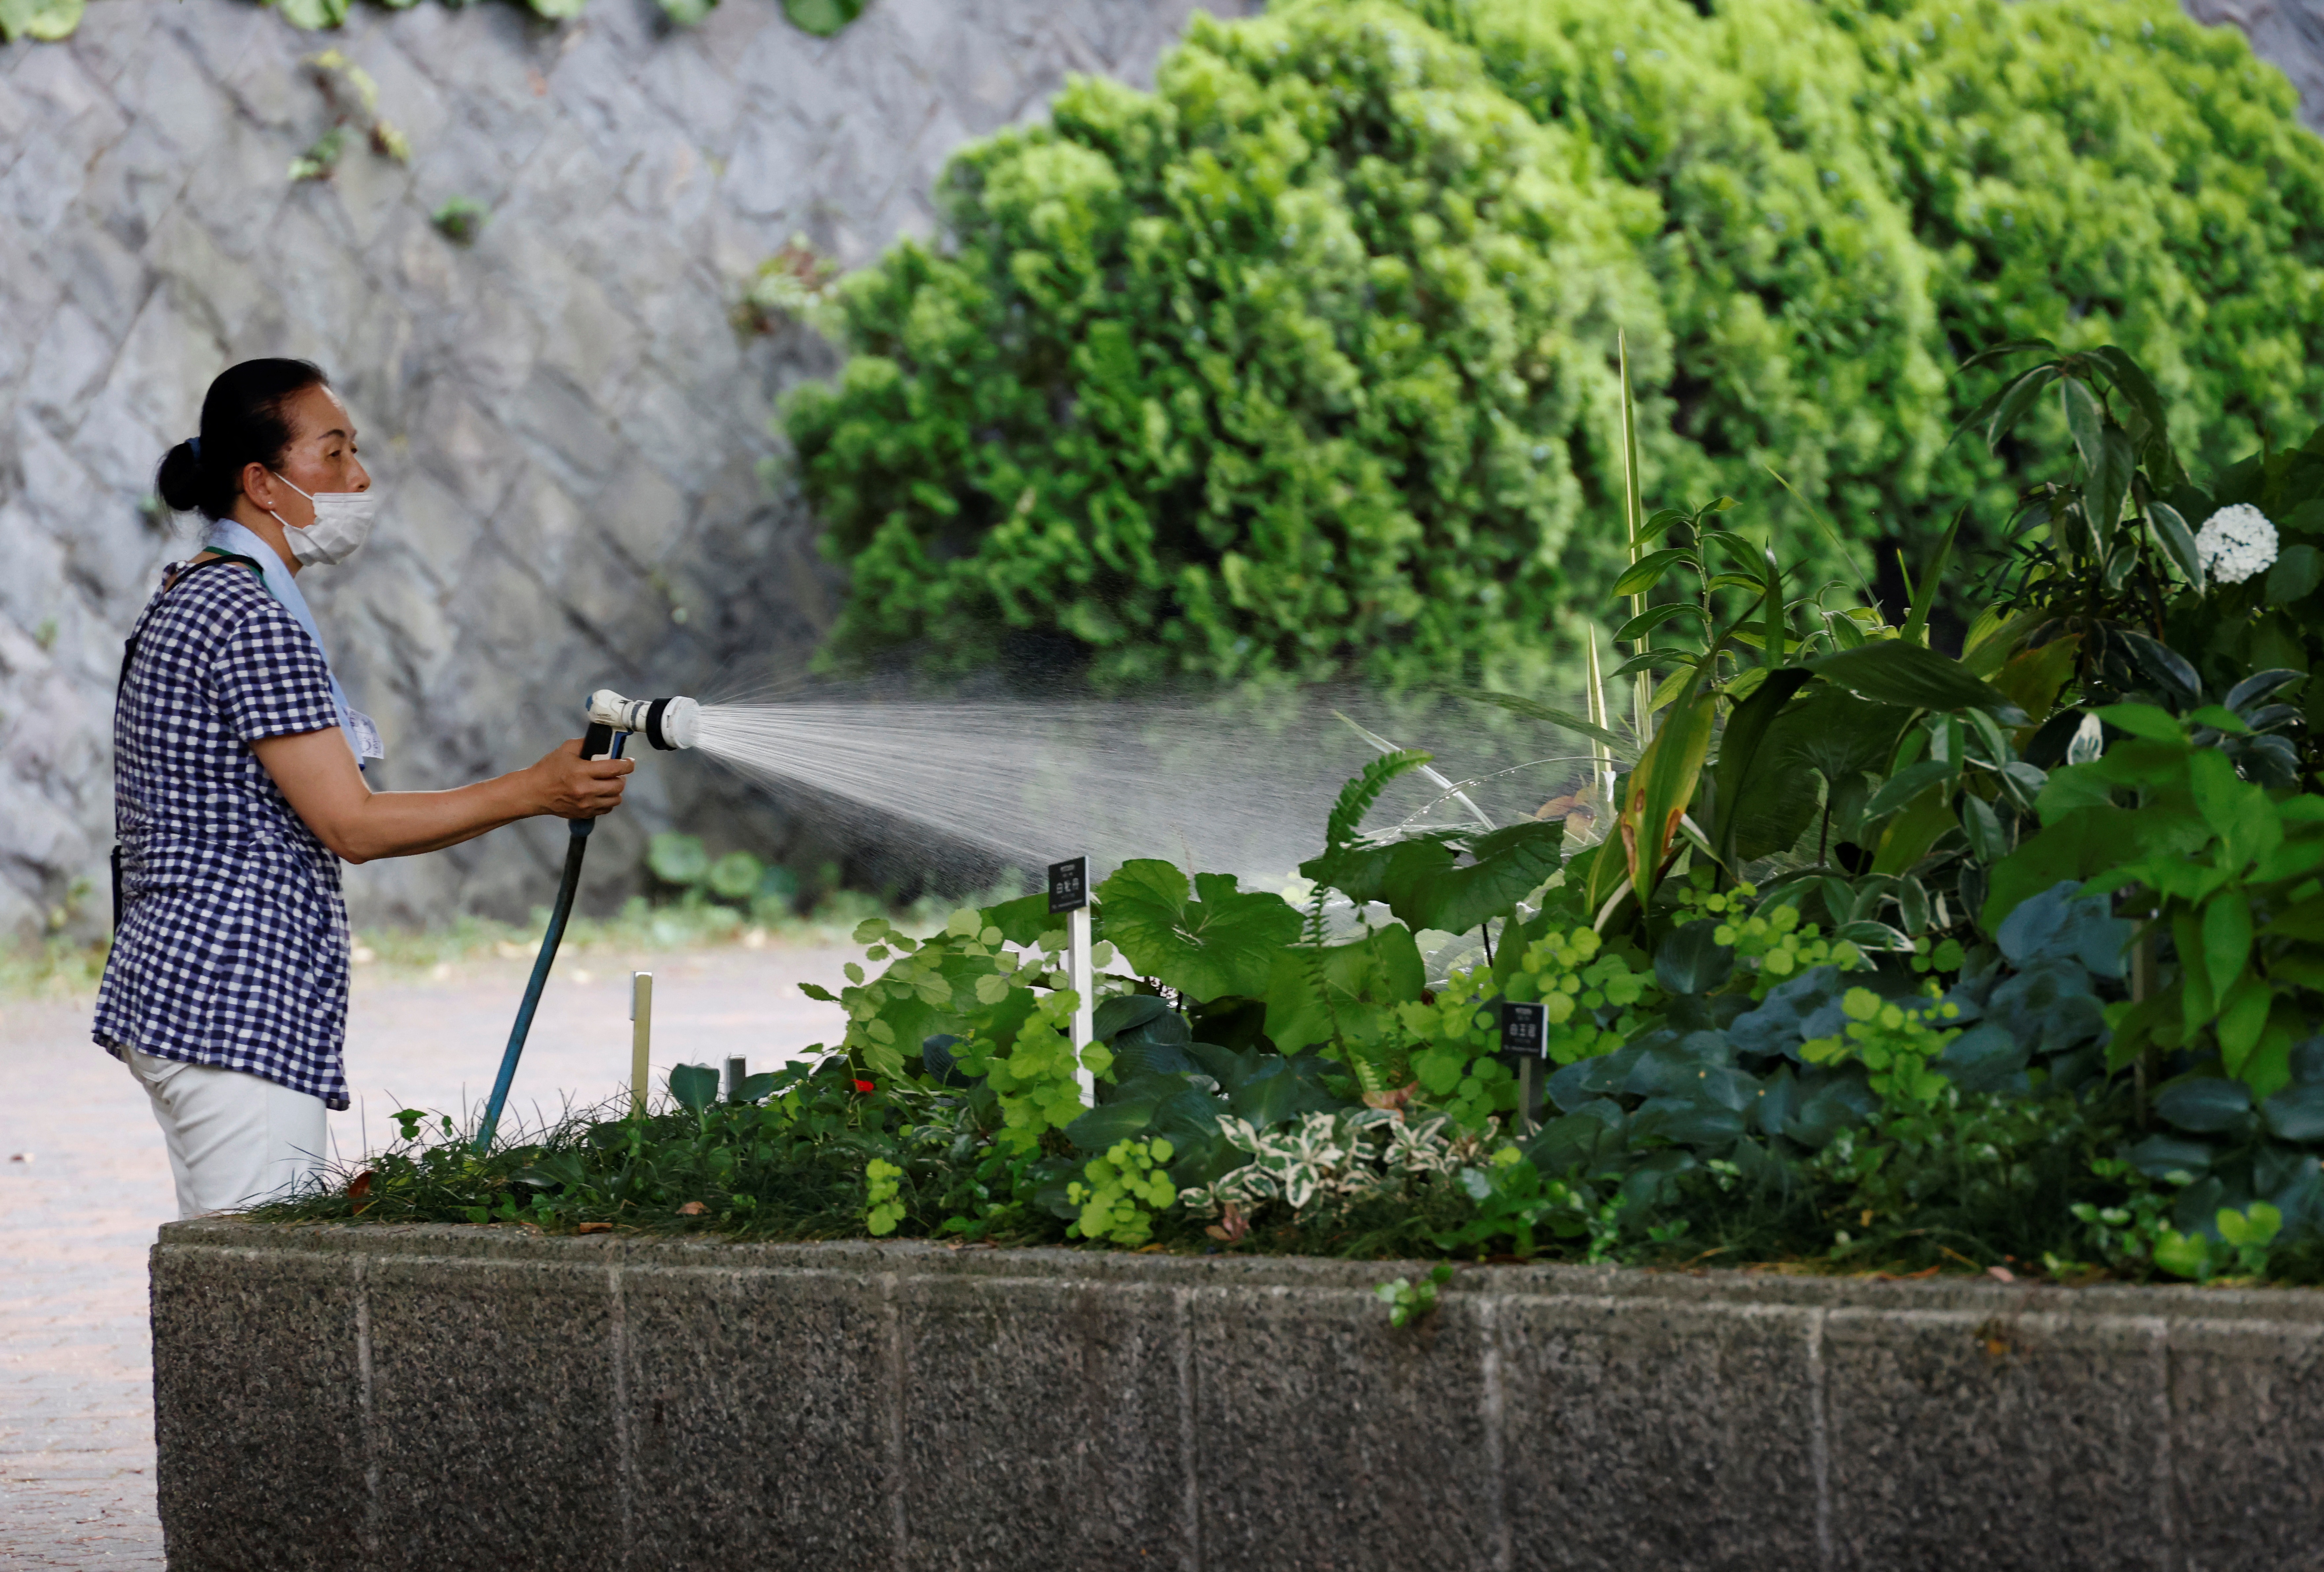 Una mujer rocía agua en un parterre de flores en un parque en medio de una histórica ola de calor en Tokio, Japón, 30 de junio de 2022. REUTERS/Kim Kyung-Hoon